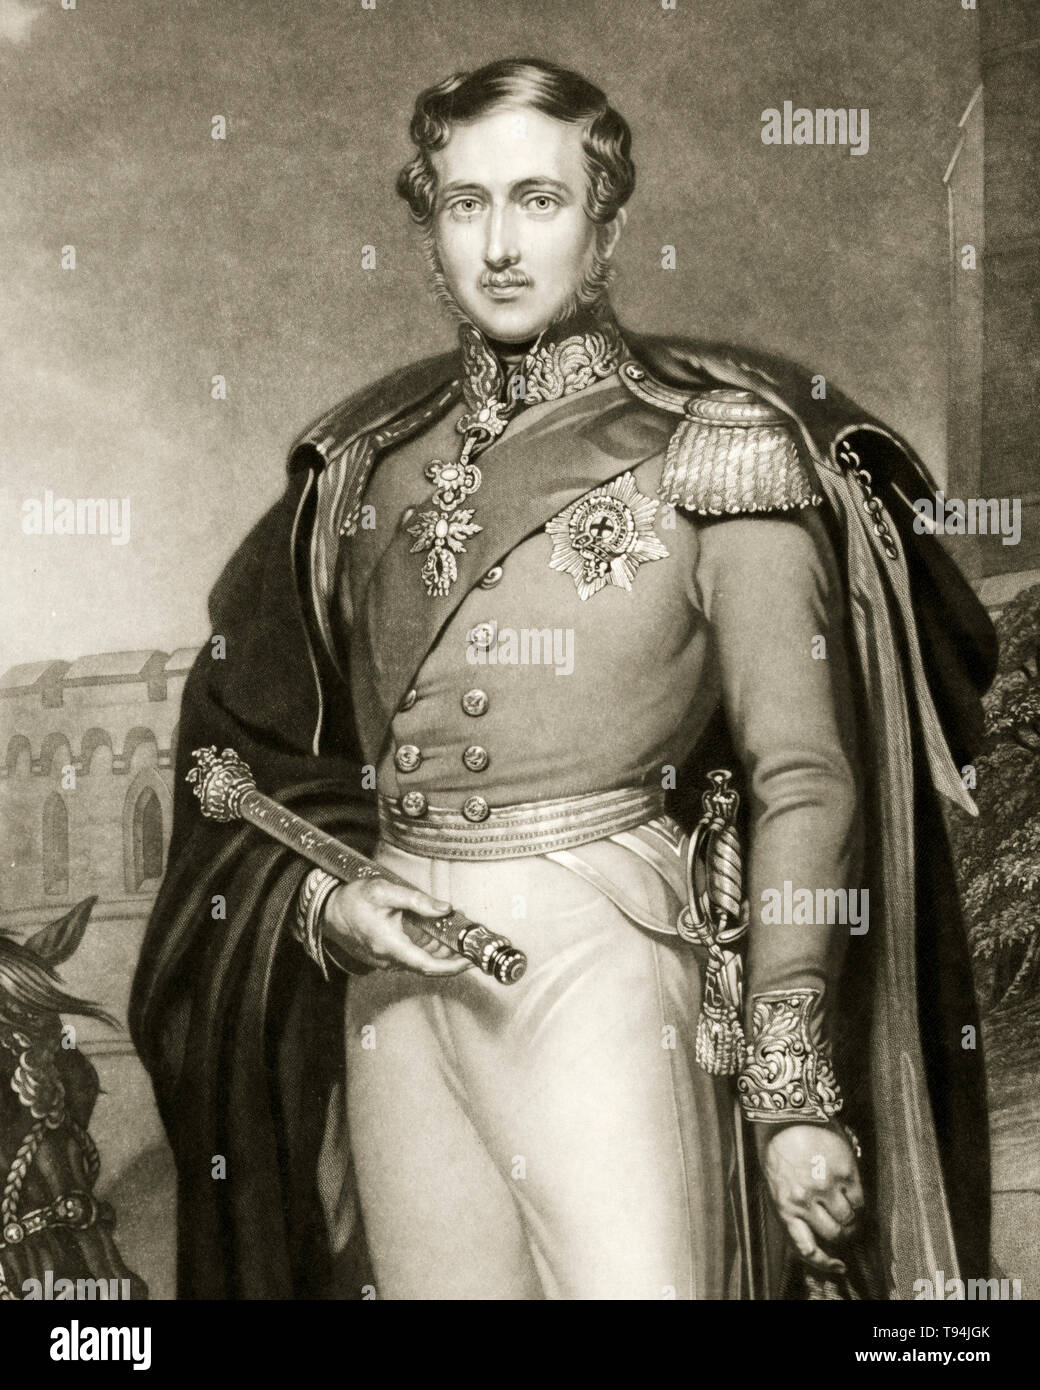 Prinz Albert, Porträt Gravur, Zepter und Hut, Uniform, 1847 Stockfoto